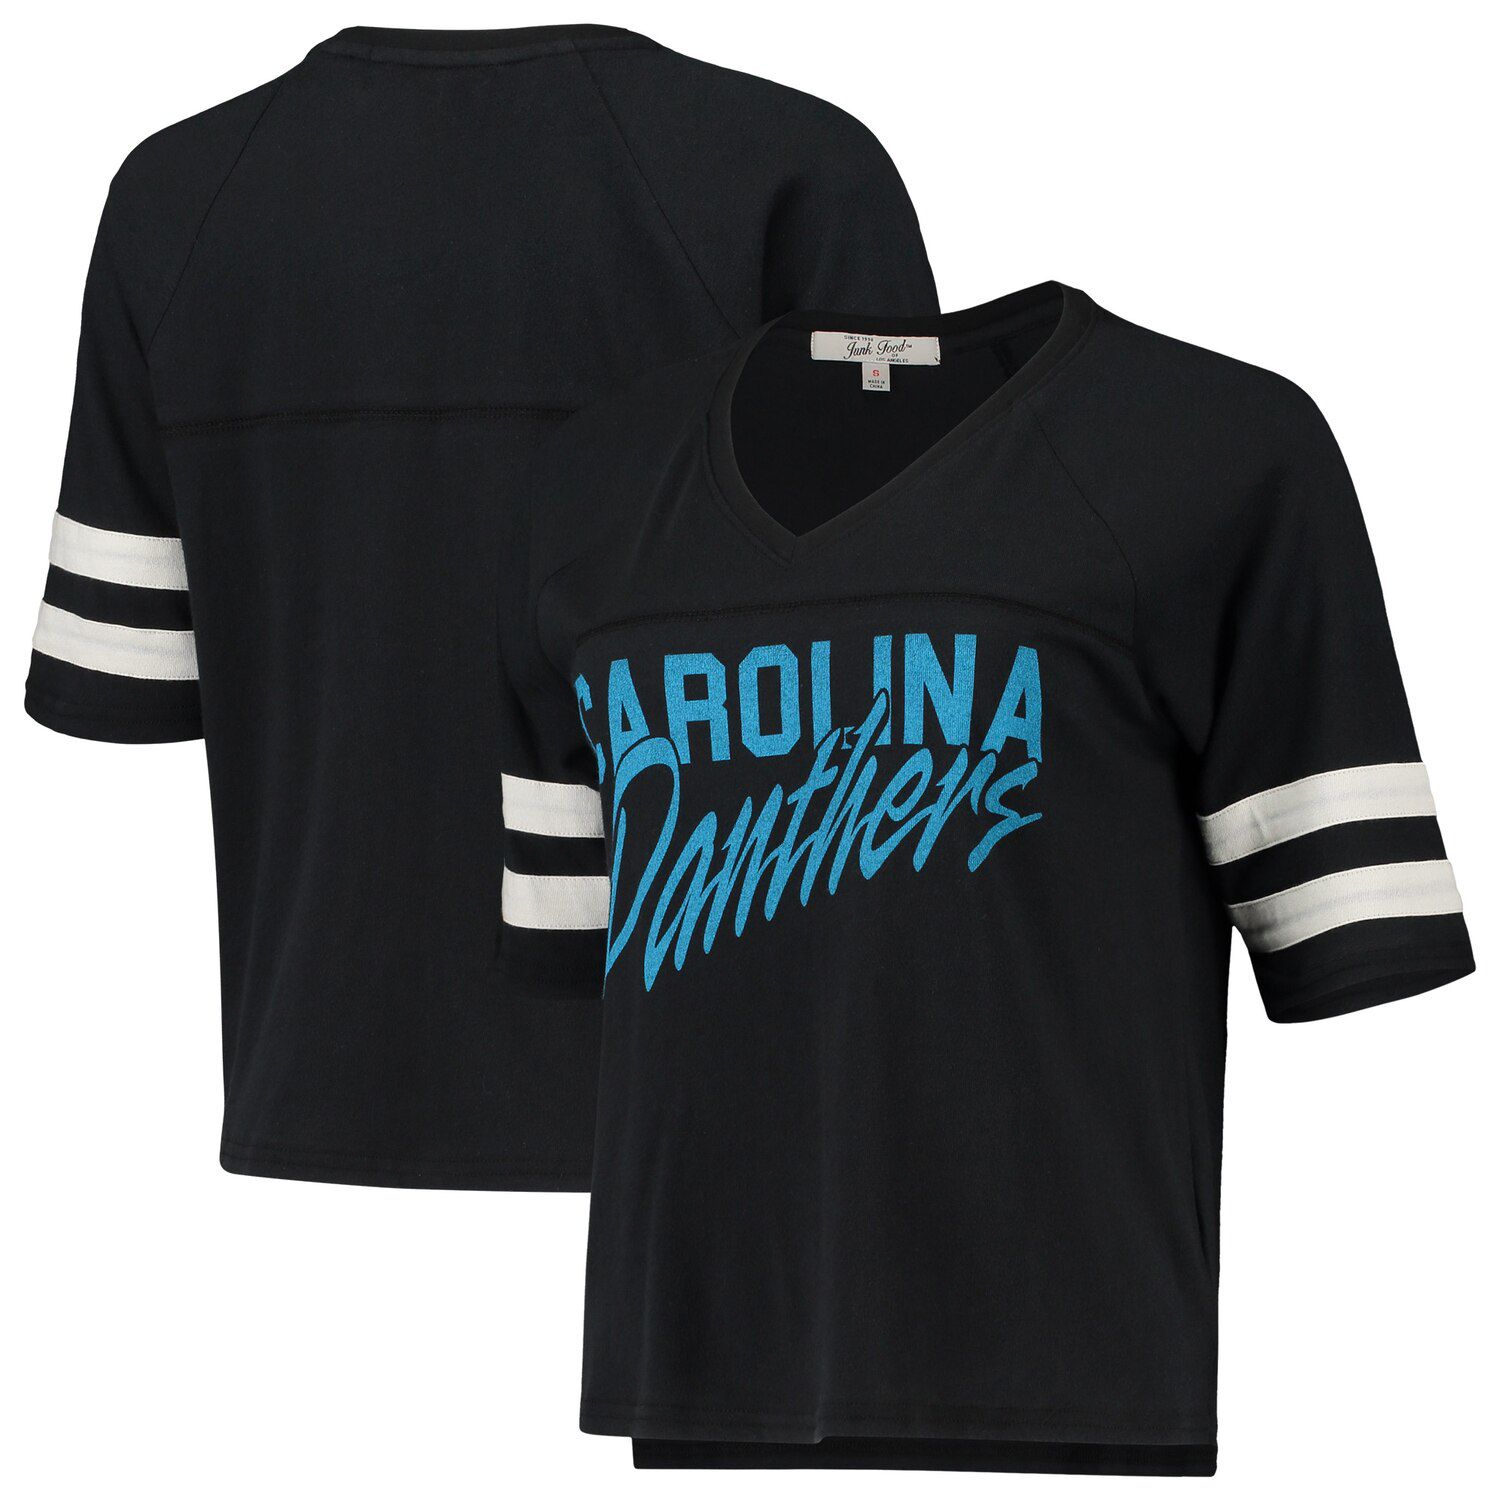 carolina panthers football t shirt